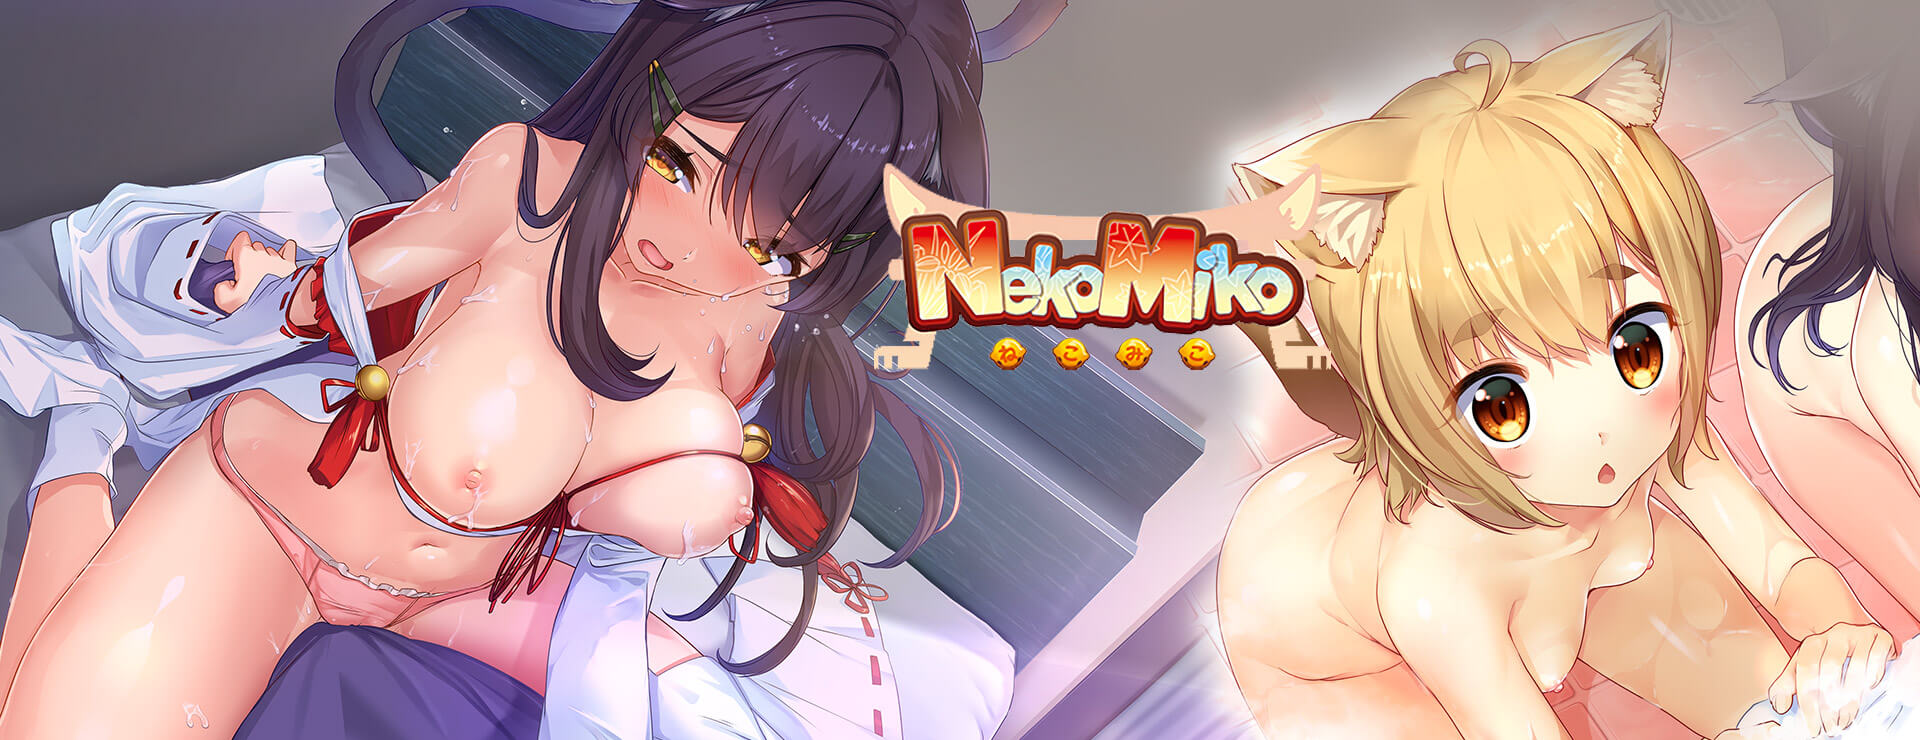 Neko Miko - 虚拟小说 遊戲